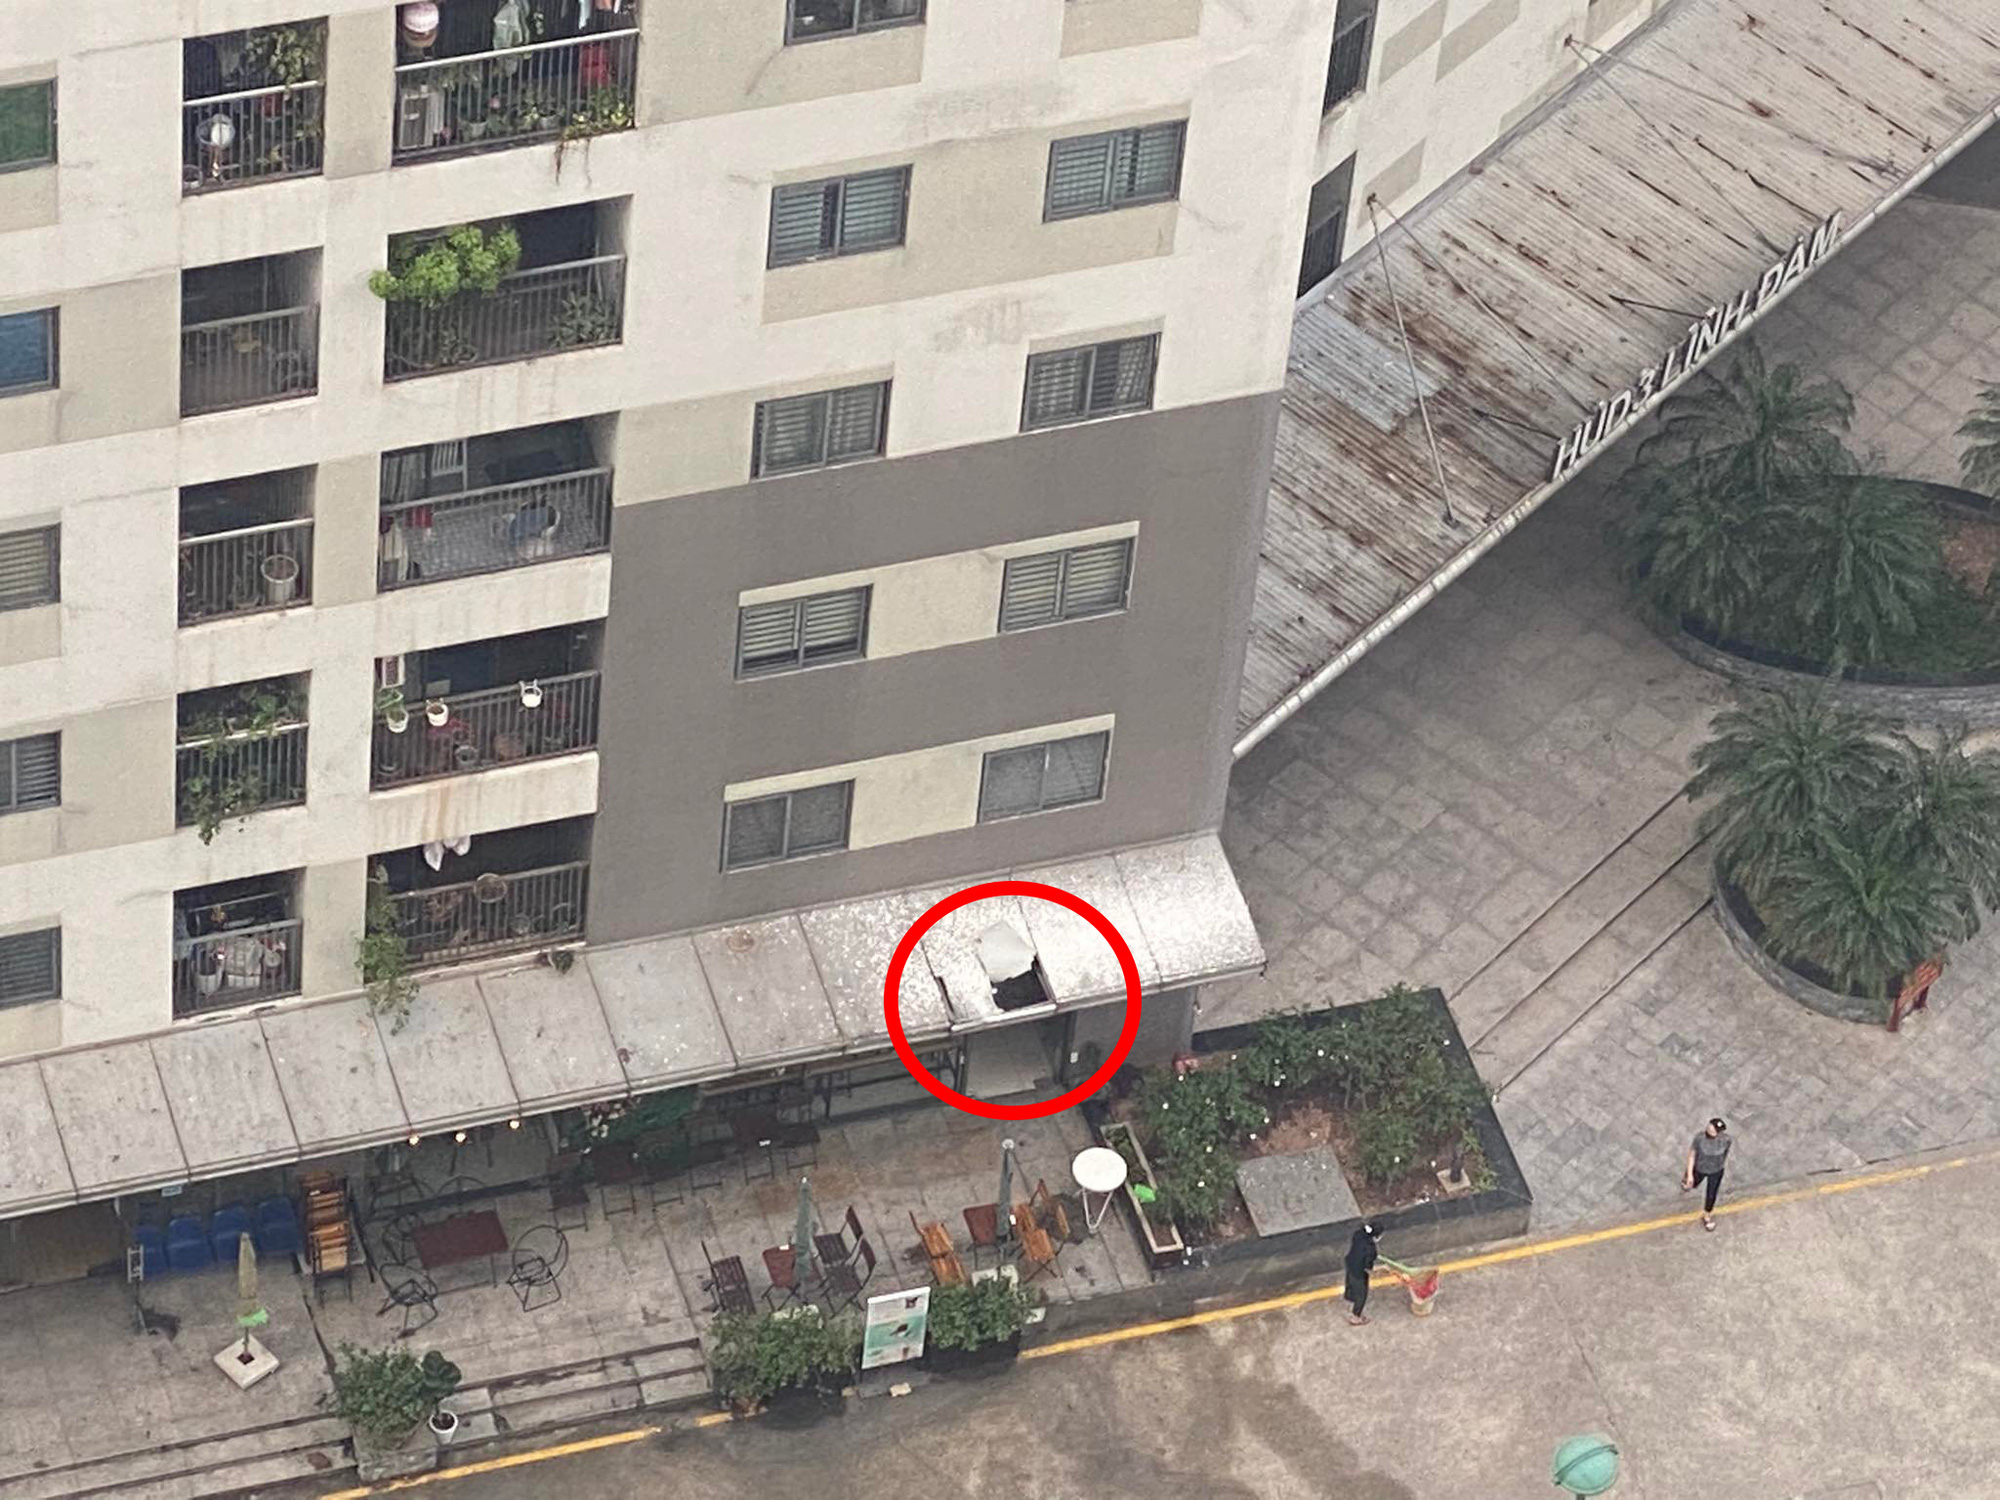 Hà Nội: Người đàn ông rơi từ tầng 12 chung cư Linh Đàm, xuyên thủng mái quán cà phê xuống đất tử vong - Ảnh 3.